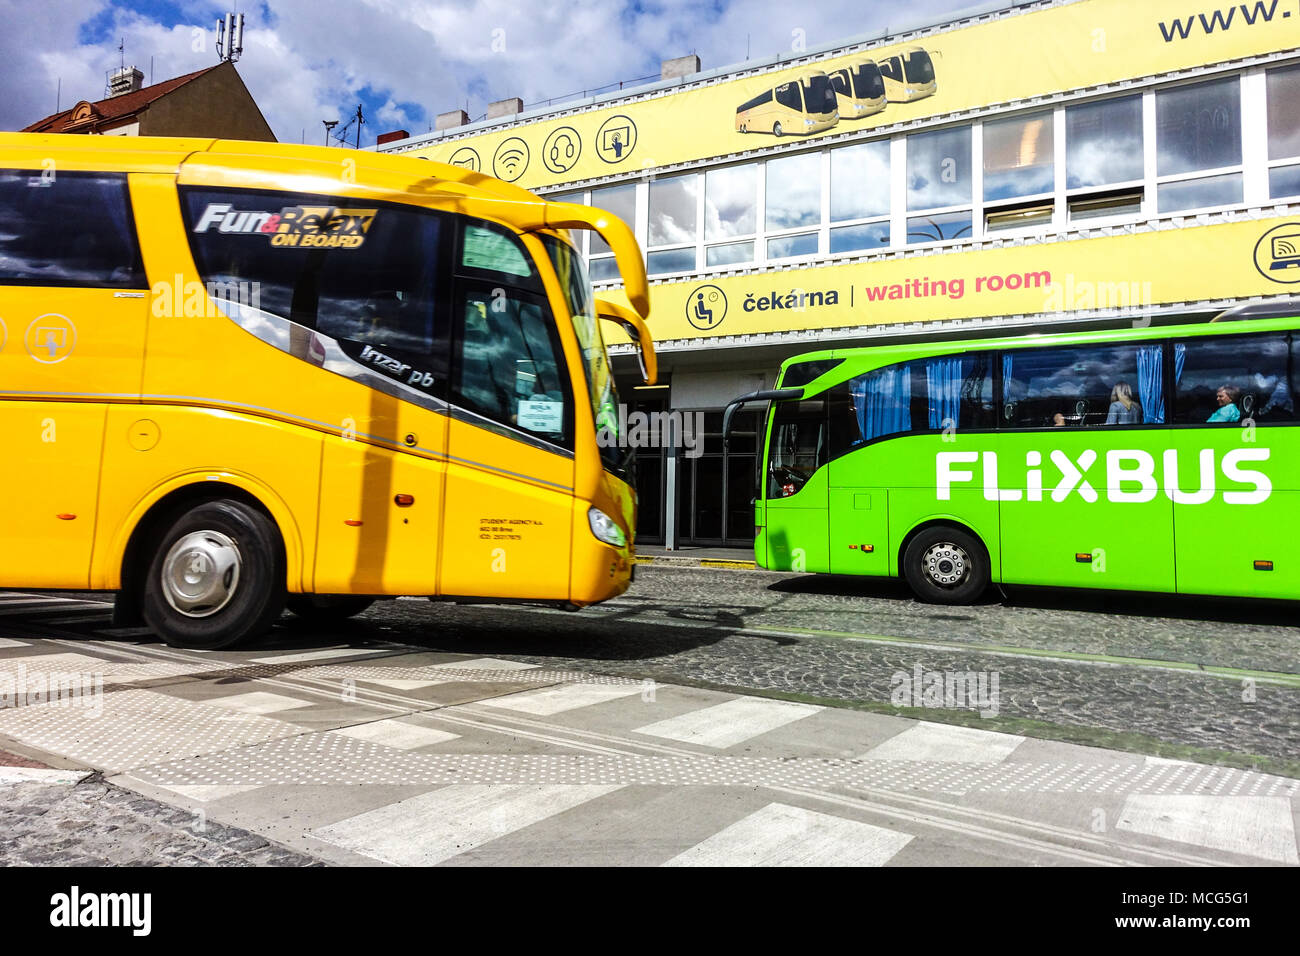 Flixbus à la gare routière Florenc, Prague, République Tchèque Banque D'Images